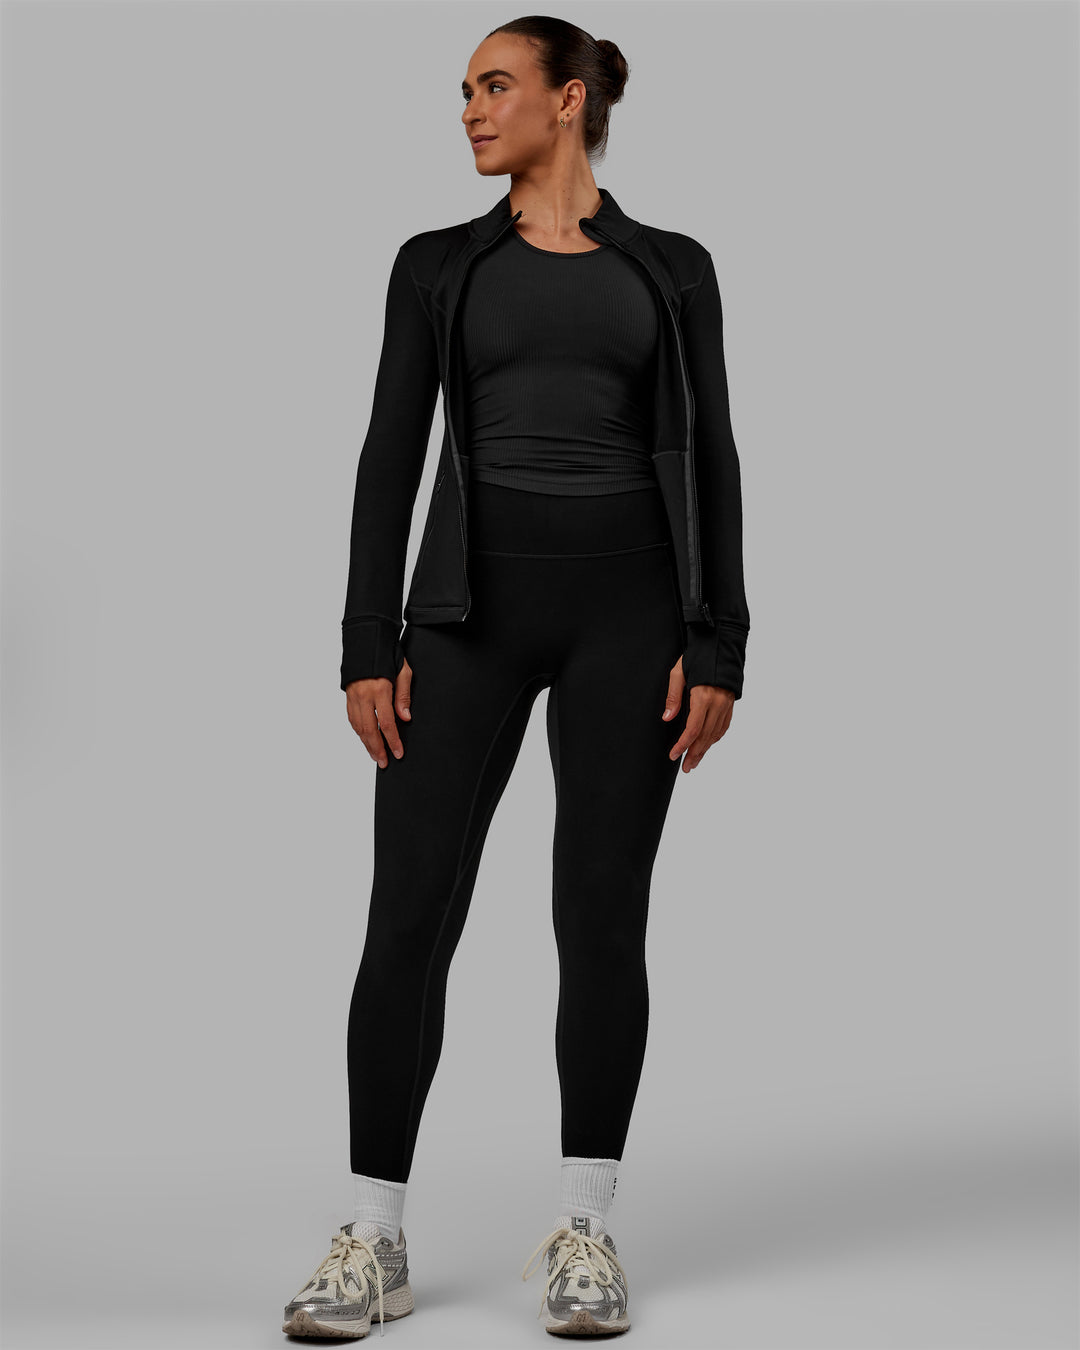 Woman wearing Stride Zip Through Thermal Jacket - Black